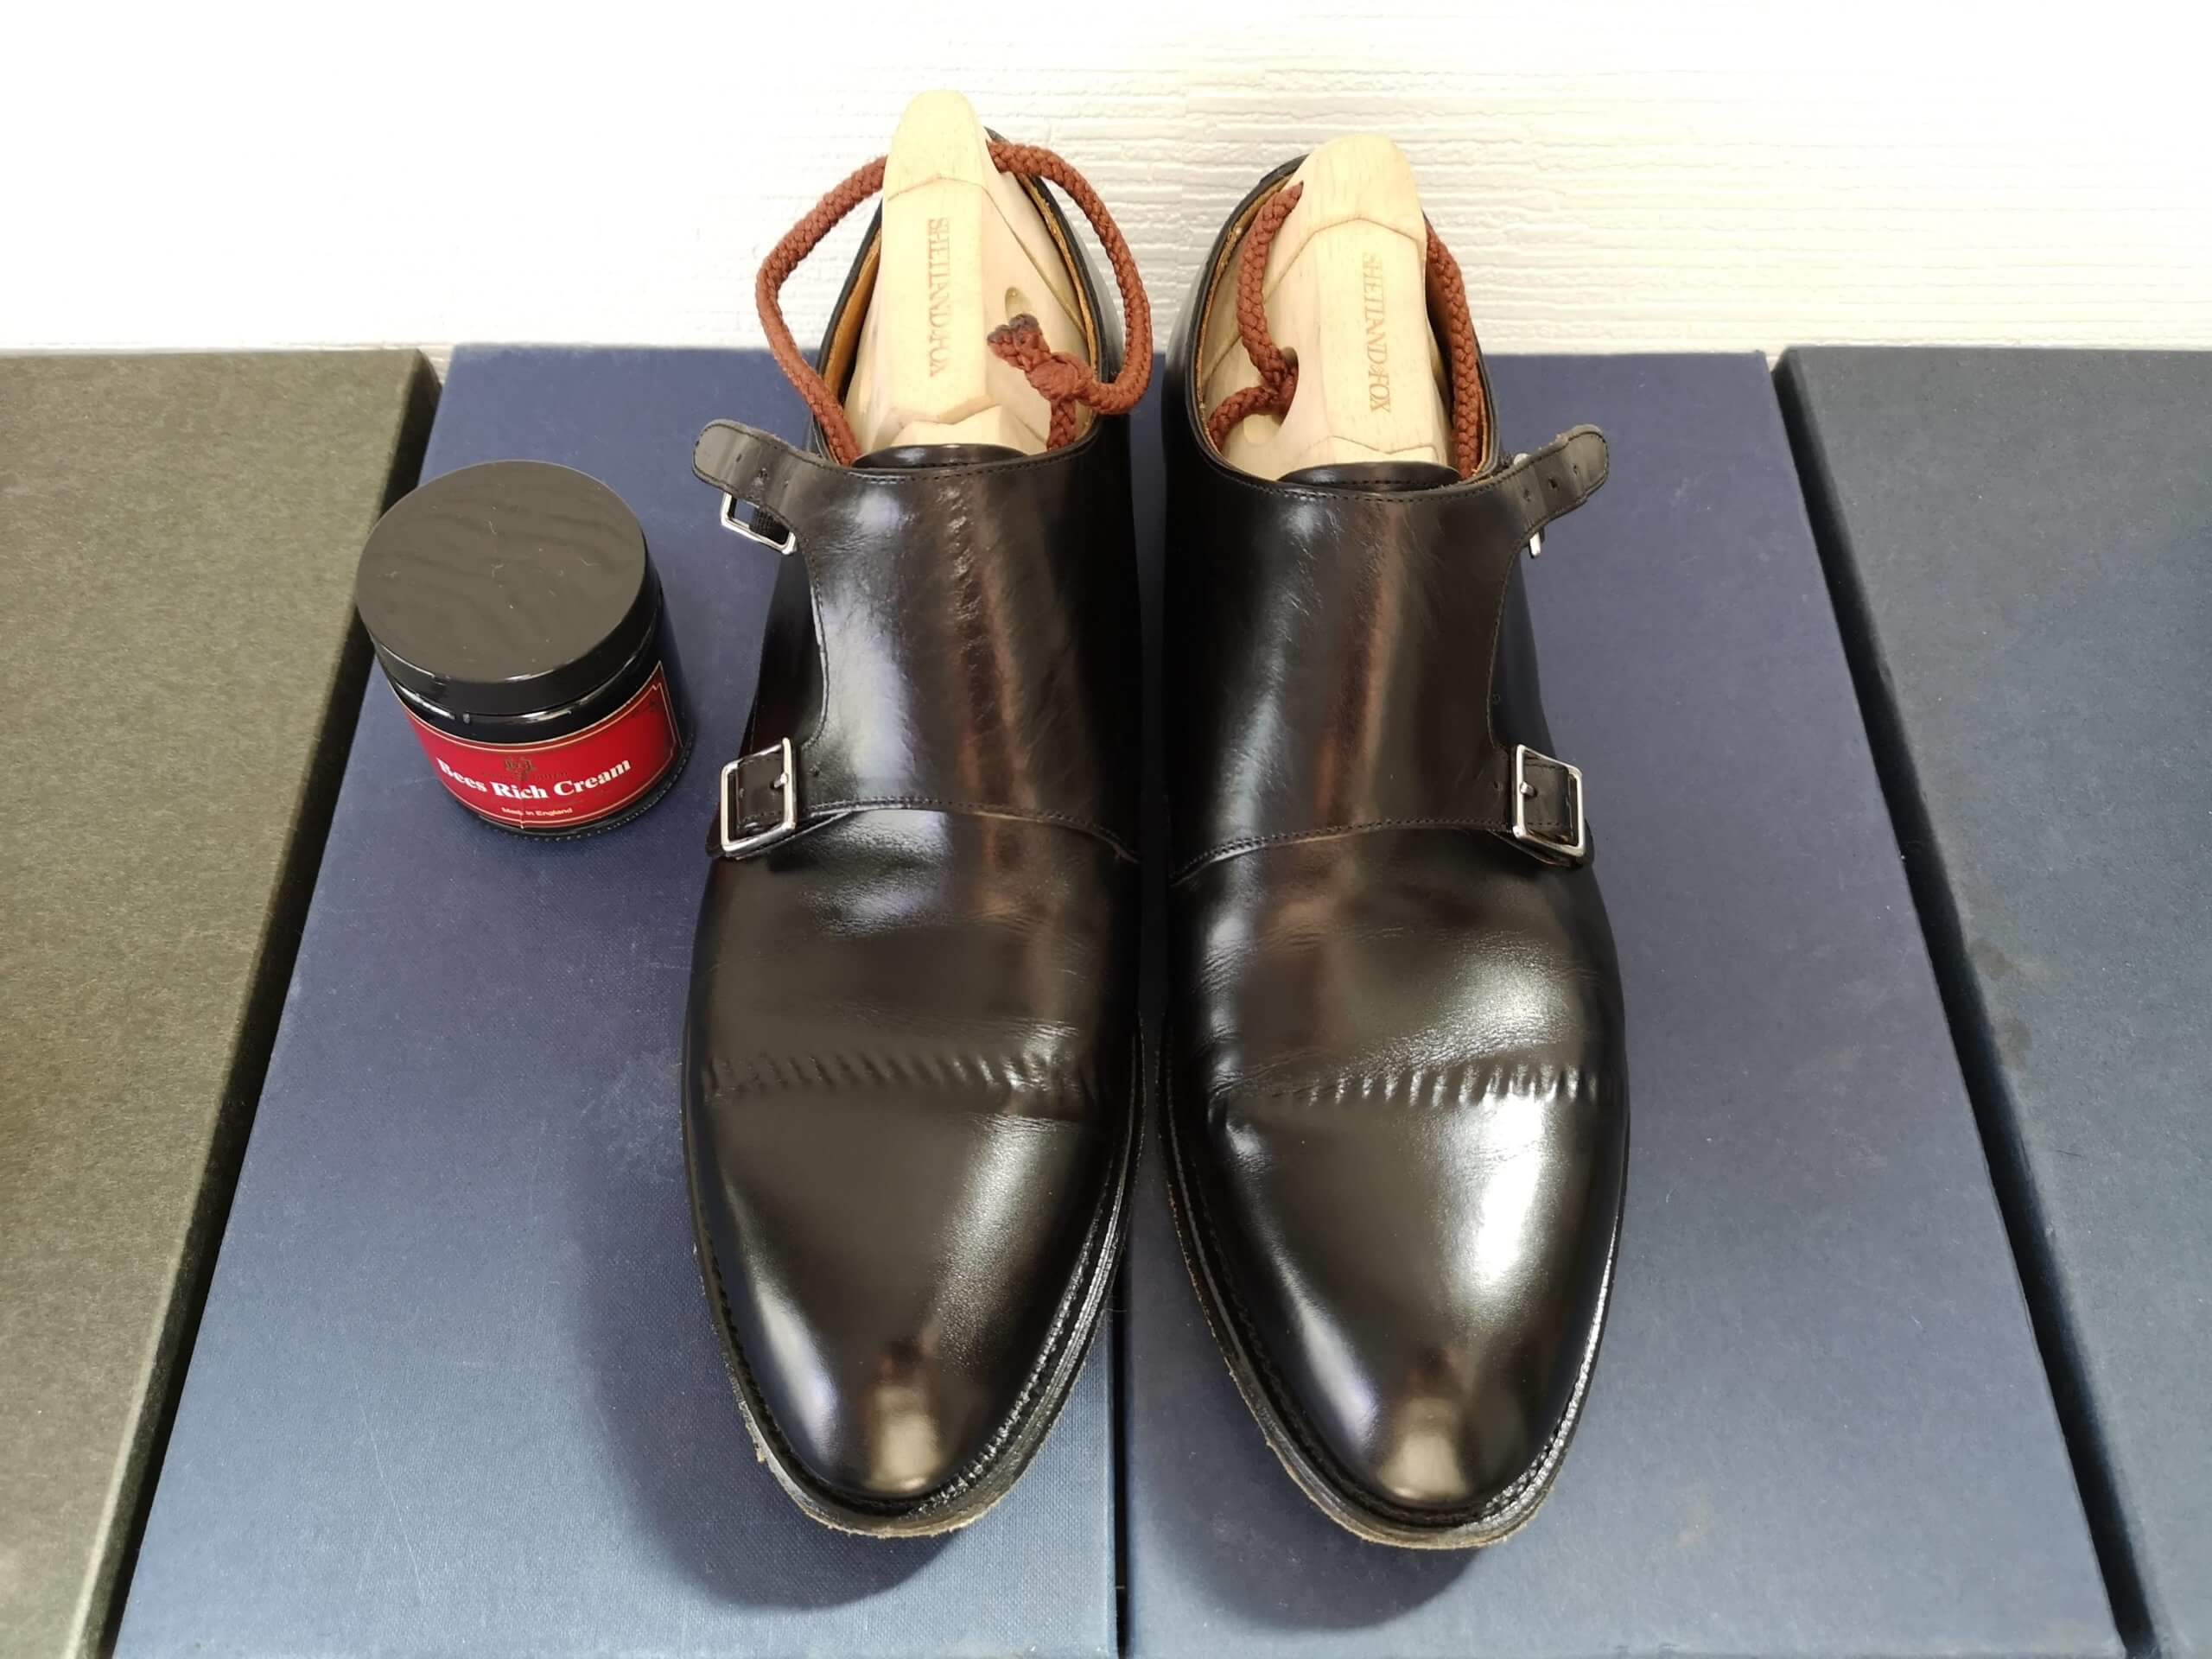 イングリッシュギルド・ビーズリッチクリームをレビュー【黒が青い】 | KutsuMedia（クツメディア）-革靴と靴磨きのブログメディア